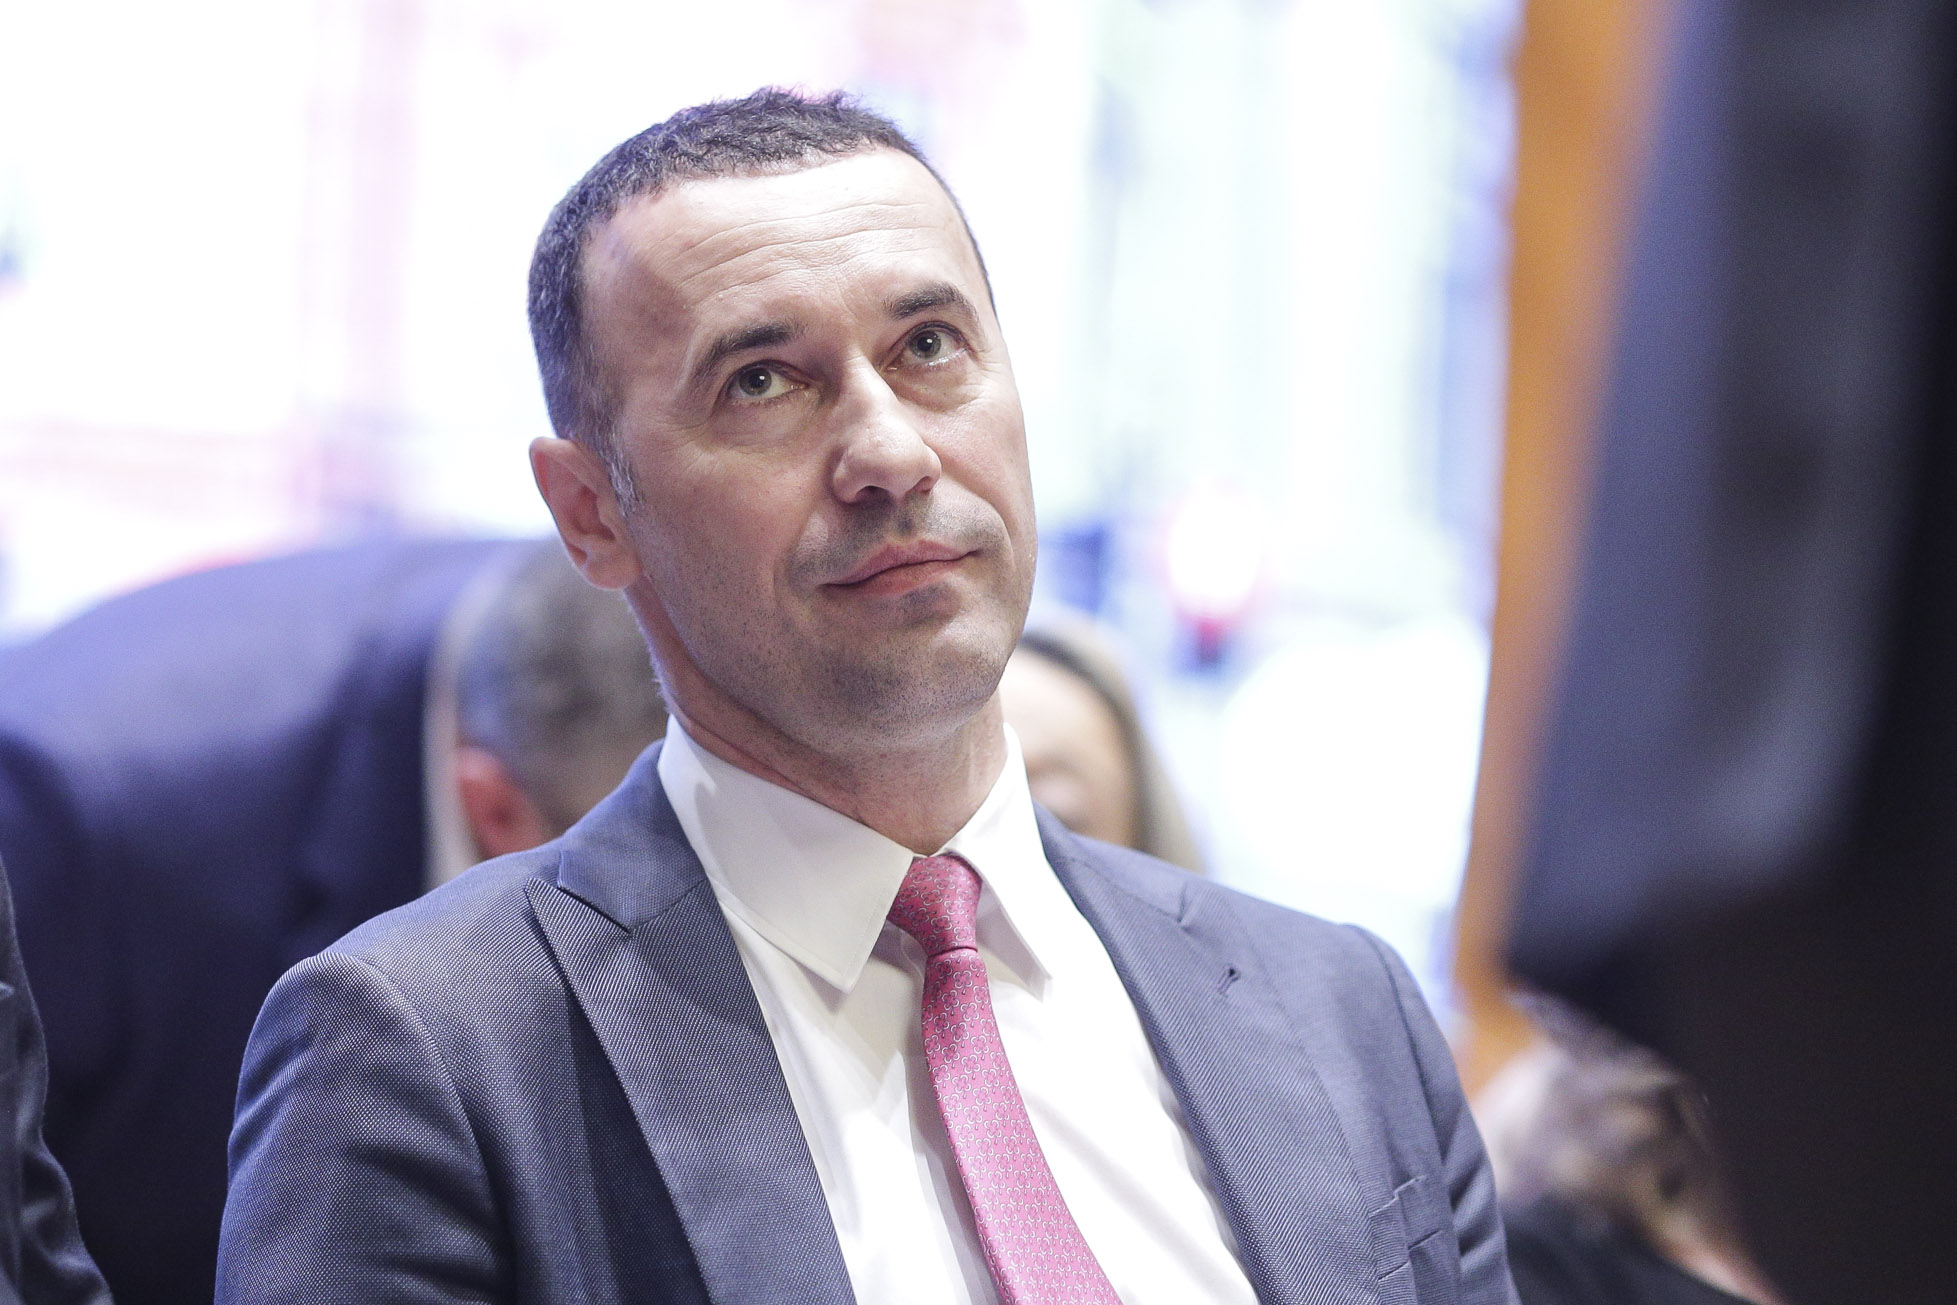 Iulian Dumitrescu a rămas președinte PNL Prahova şi a semnat documentele depuse la Birourile Electorale. PSD le-a contestat fără succes